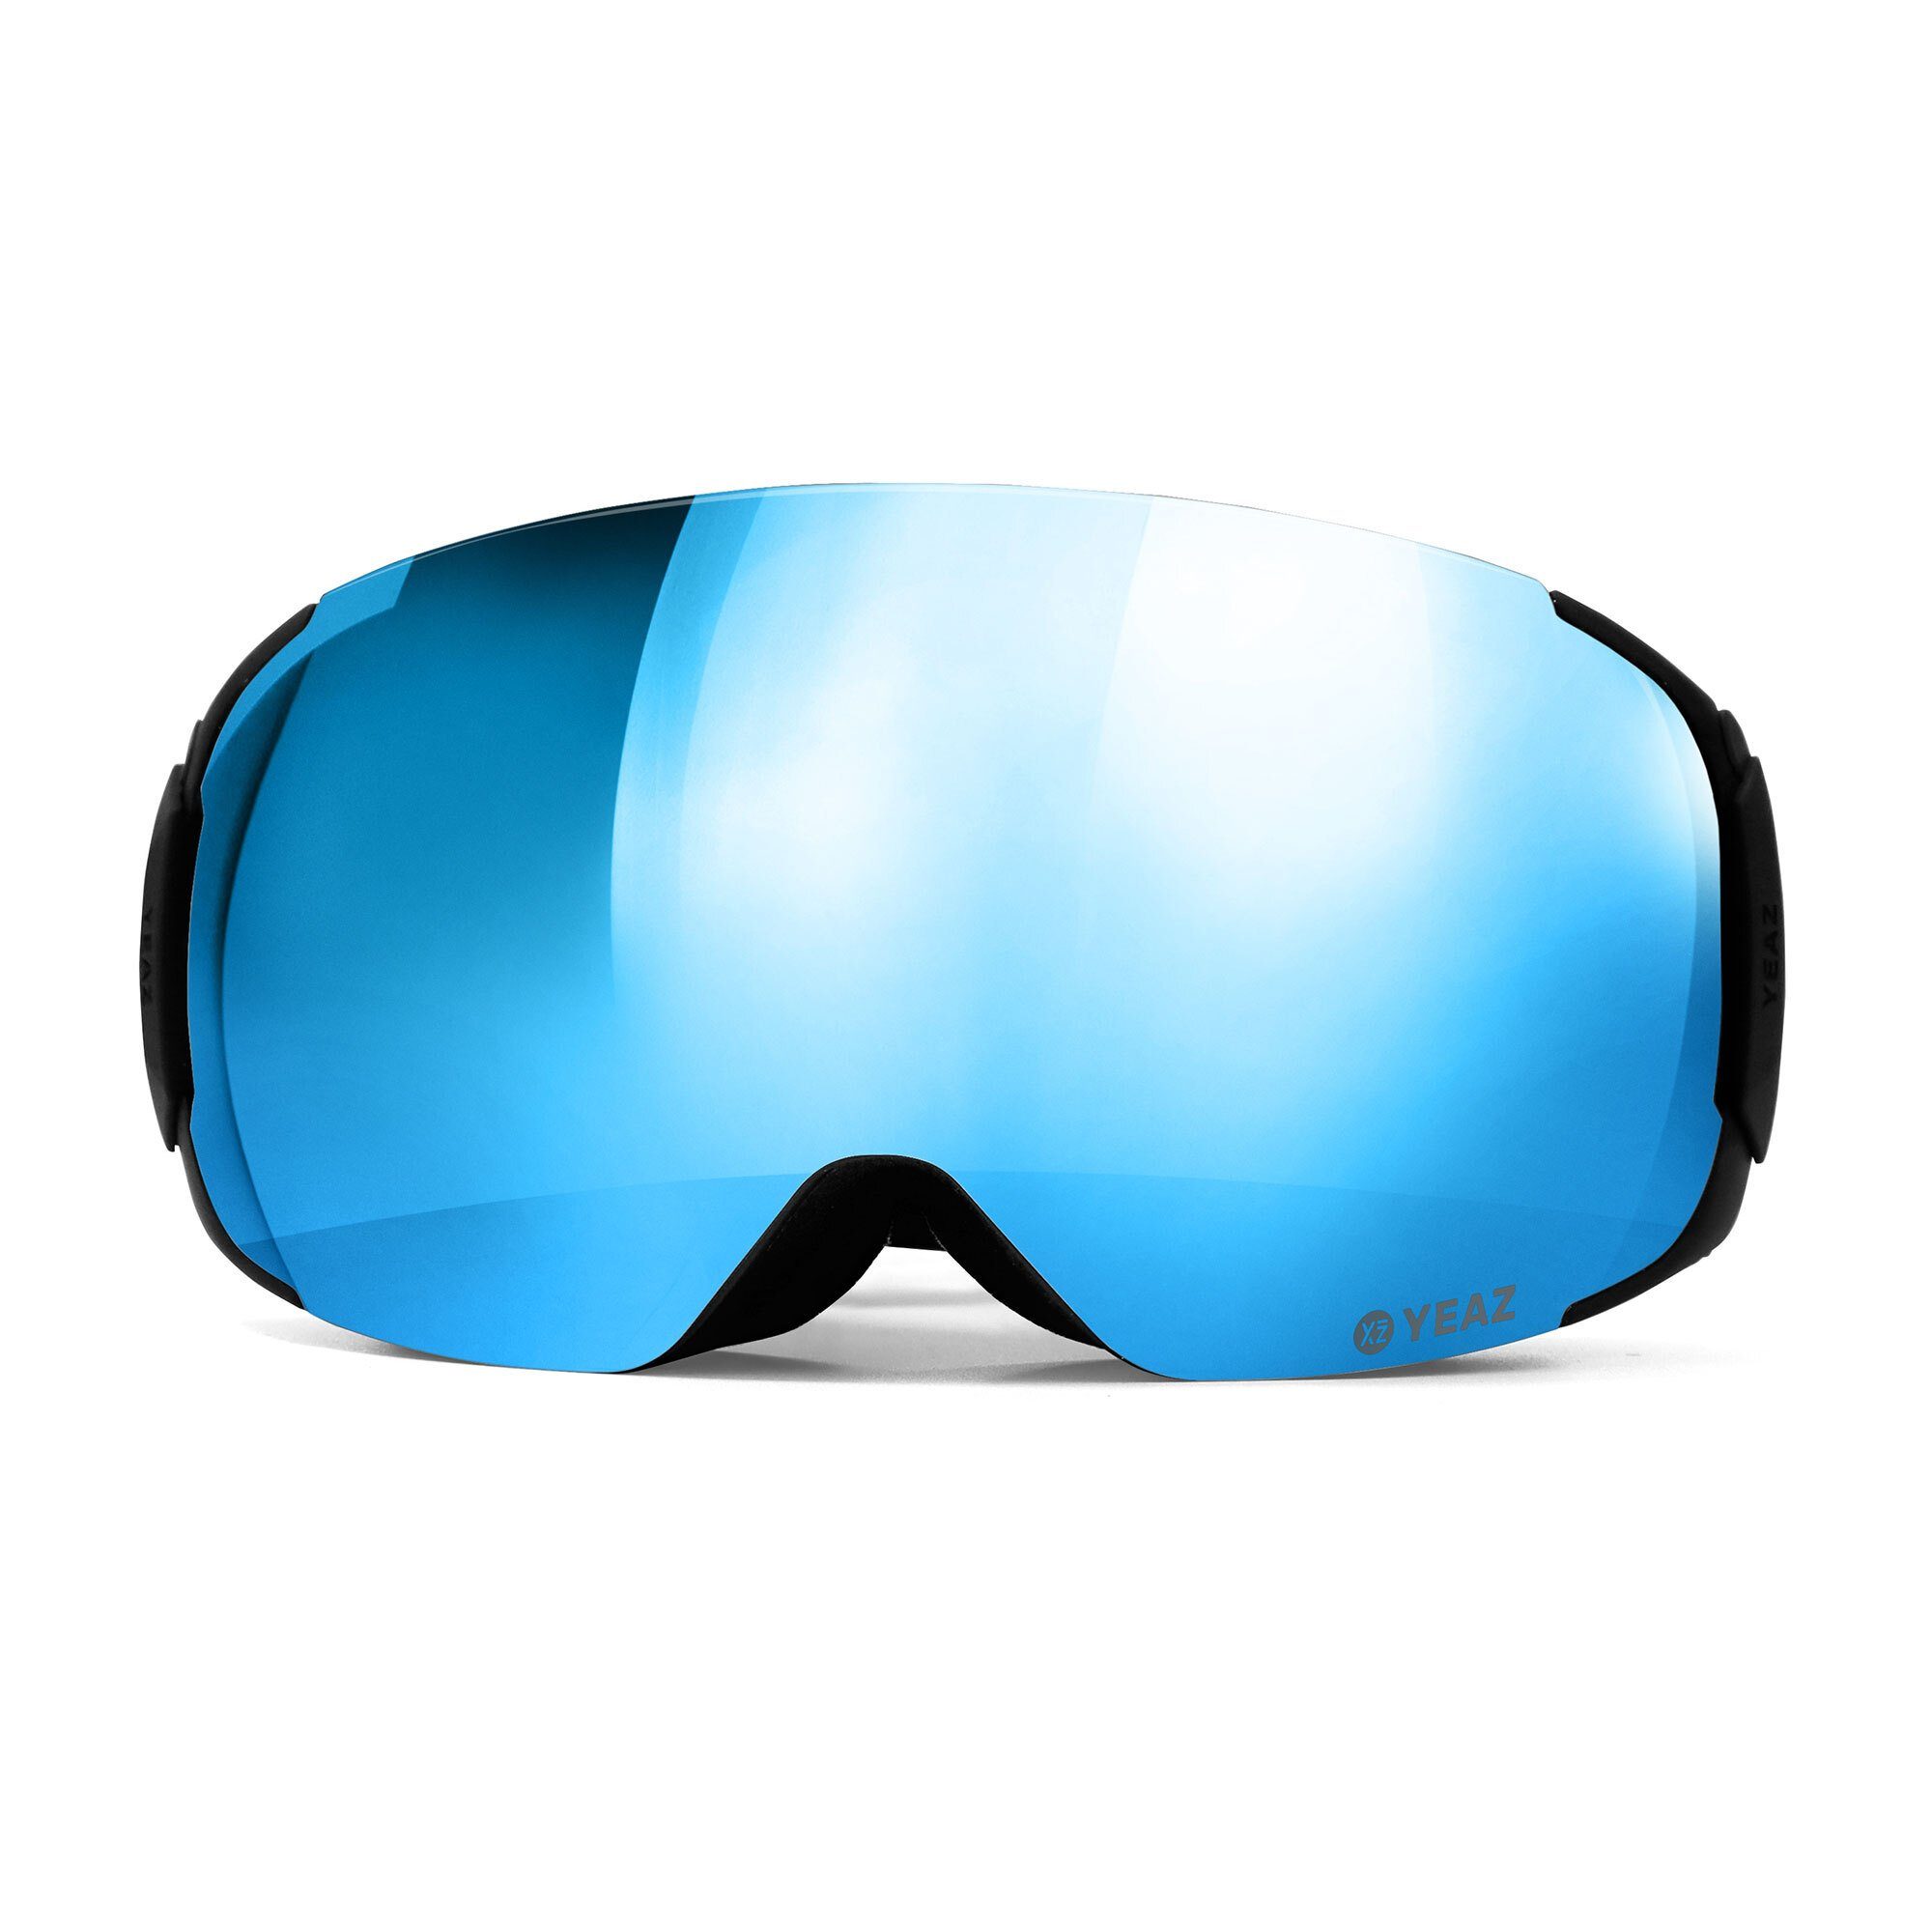 Premium-Ski- und und Skibrille für TWEAK-X YEAZ ski- Erwachsene und Jugendliche snowboard-brille, Snowboardbrille